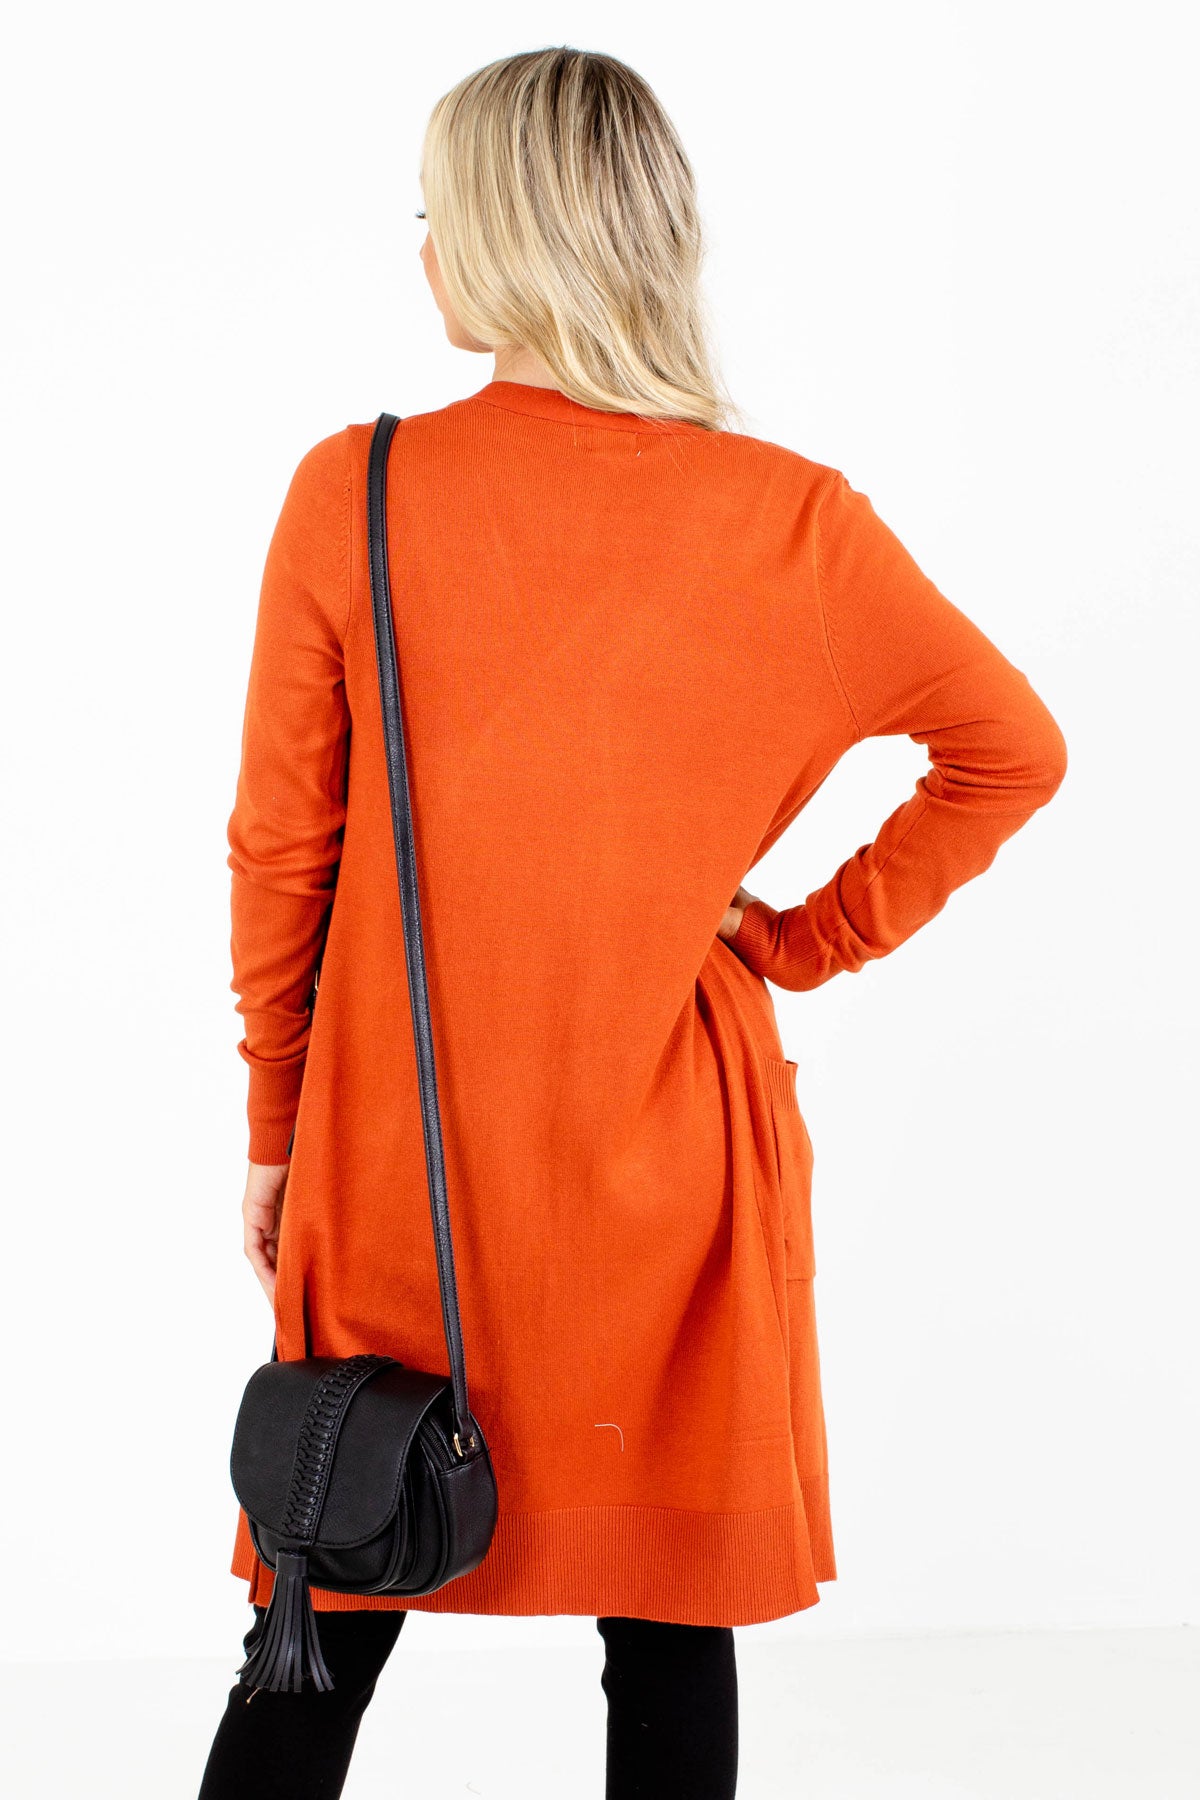 Women's Cardigan in Rust Orange